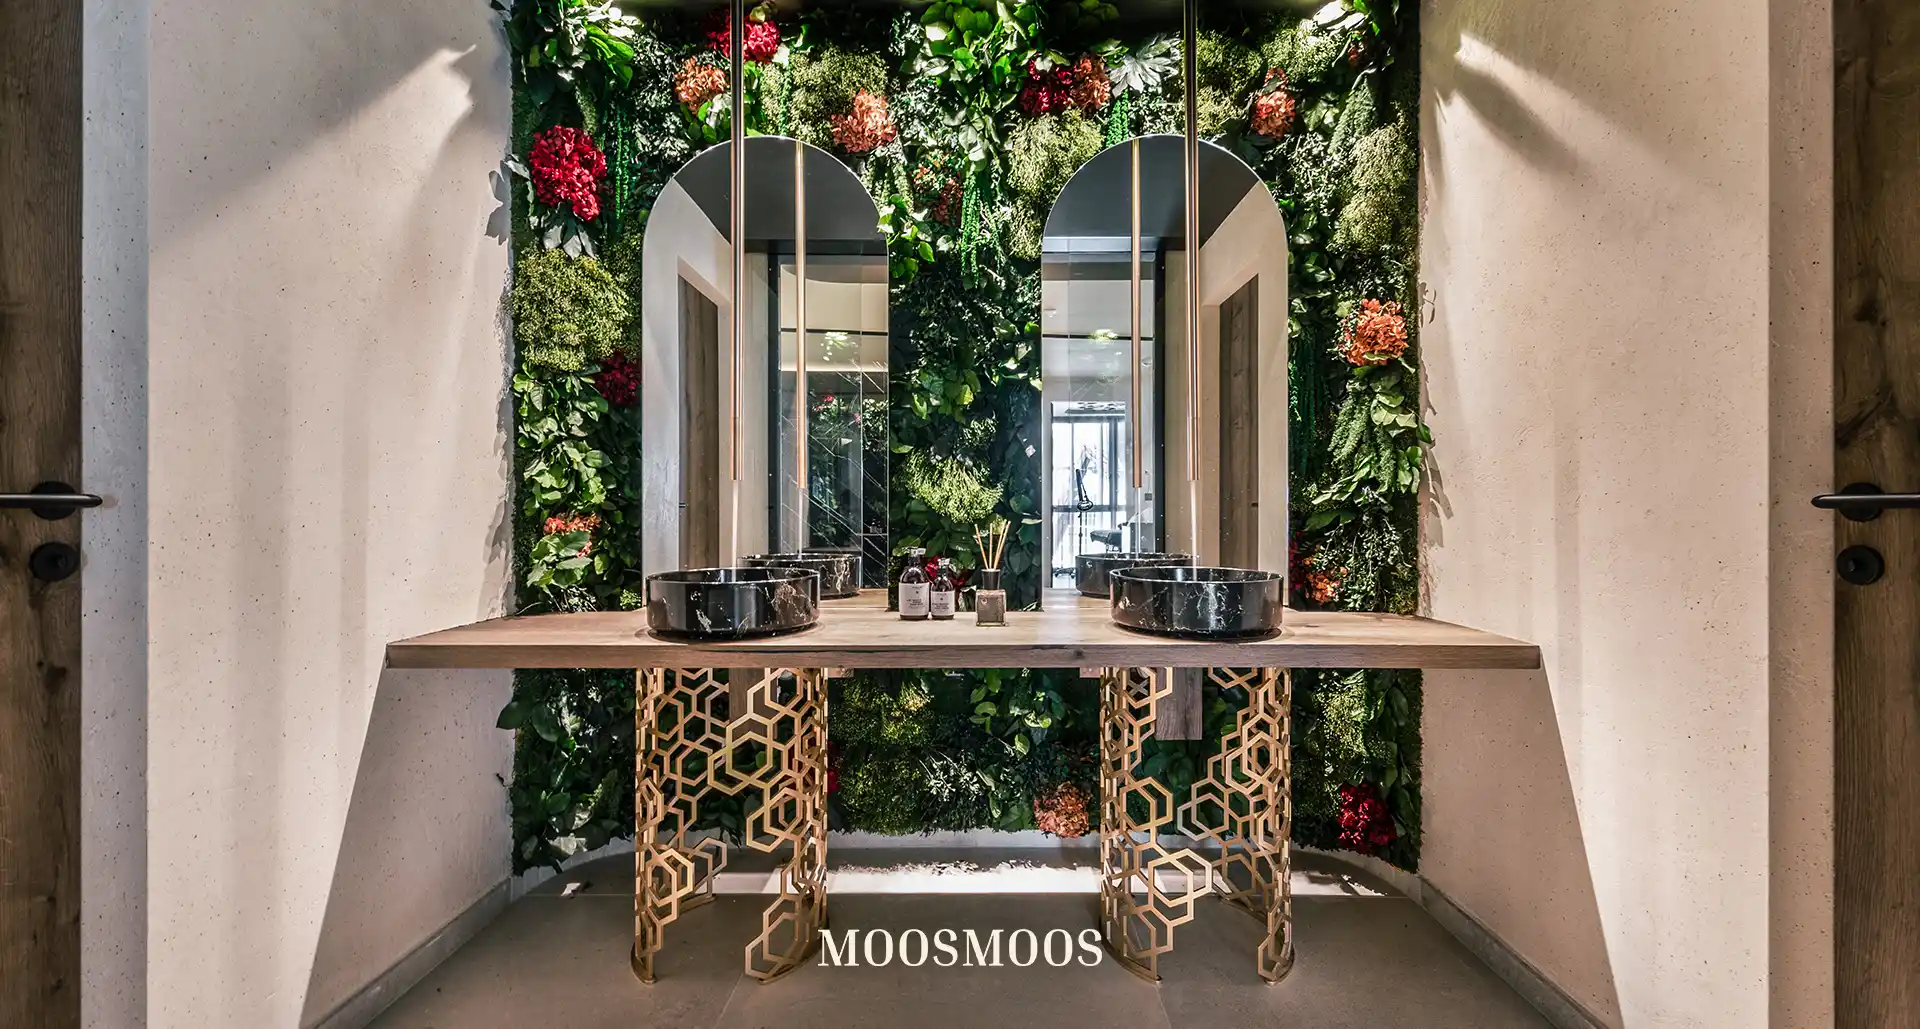 MOOSMOOS Blumenwand / Flowerwall mit echten Blumen, Pflanzen und Moosen im Bad